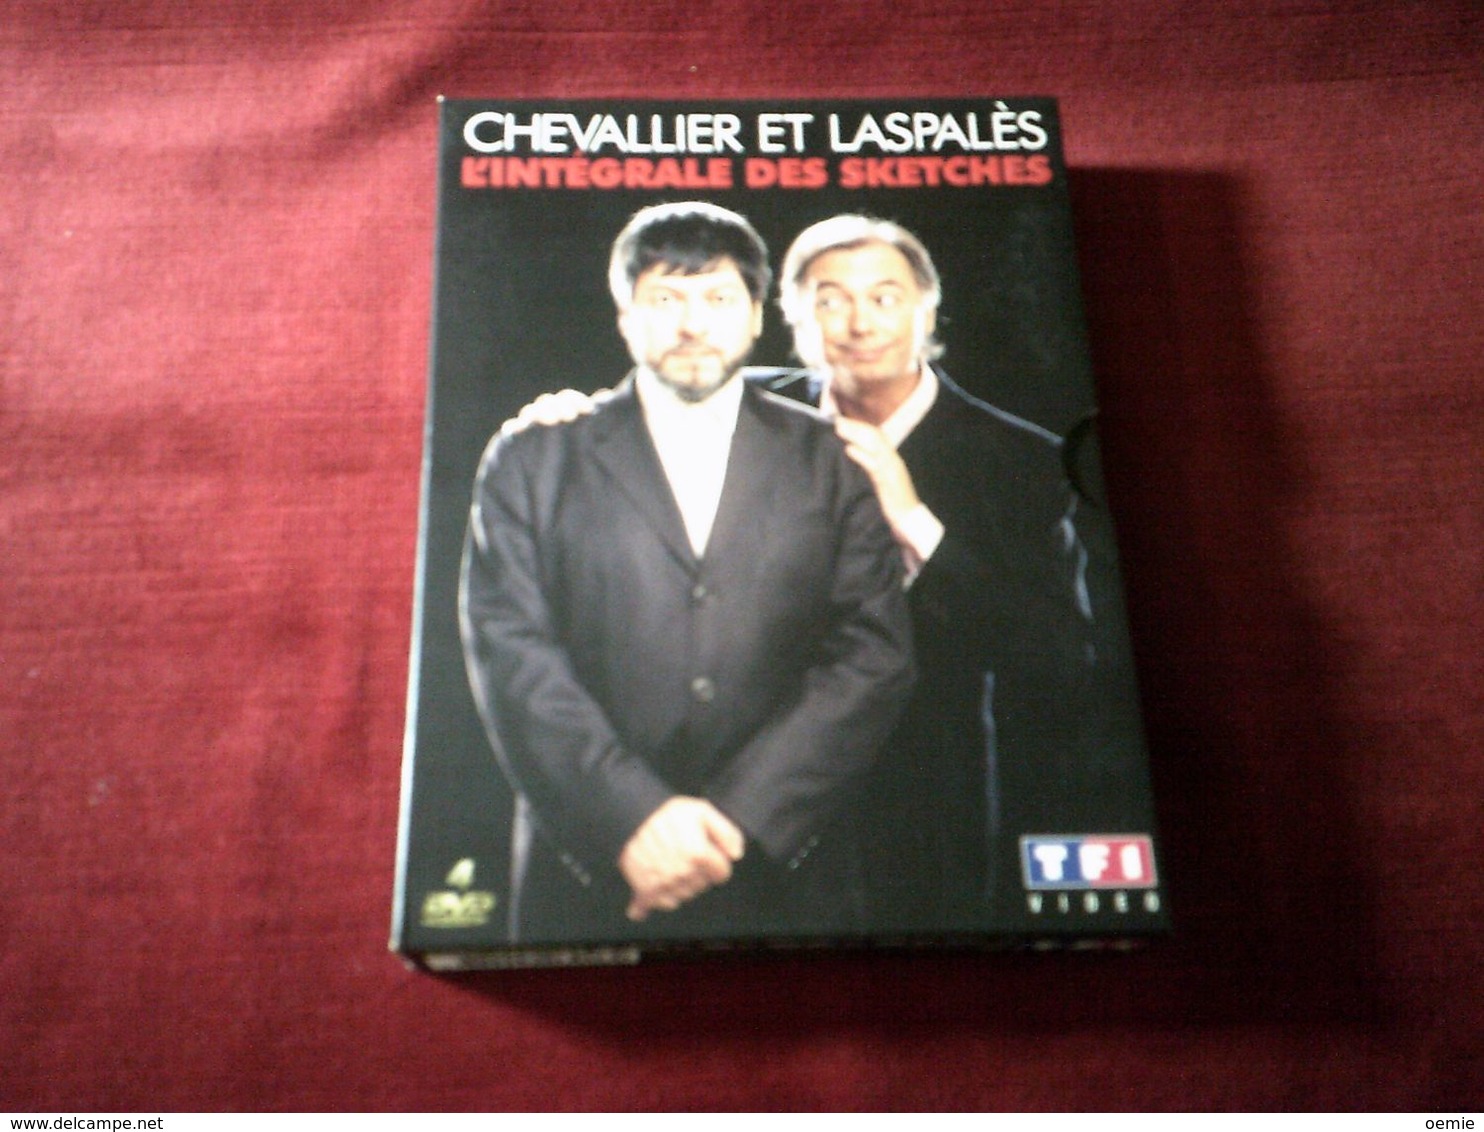 Chevalier Et Laspales  4  DVD  L'INTEGRALE DES SKETCHES - Concert En Muziek